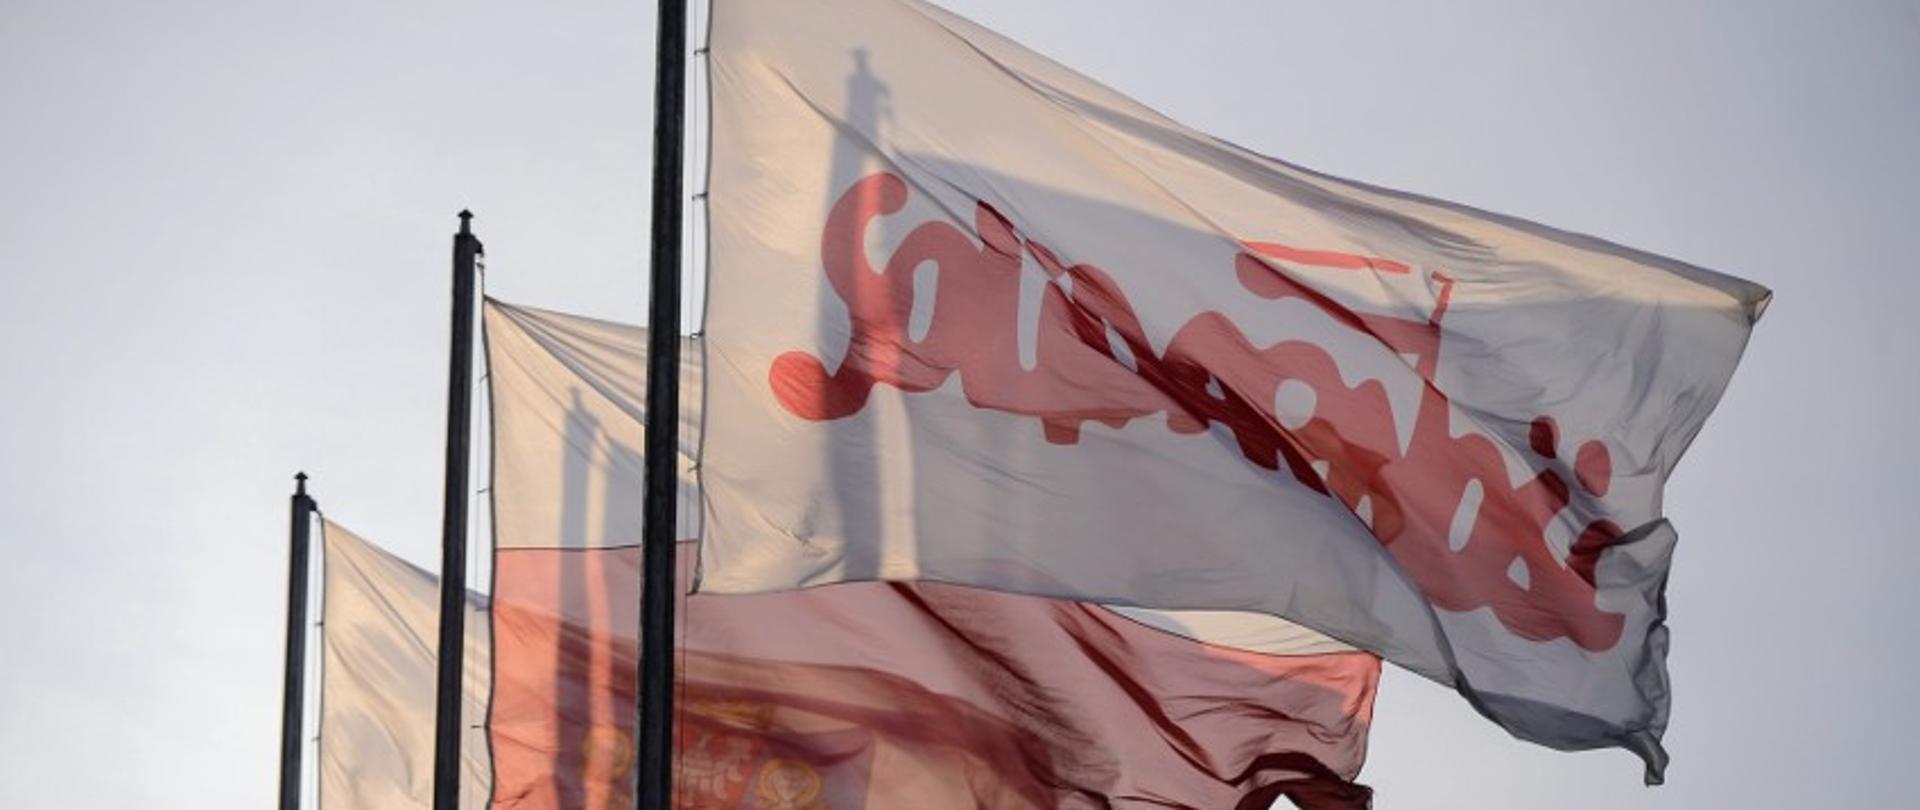 Na pierwszym planie na maszcie powiewająca flaga solidarności, dalej flaga Rzeczpospolitej Polskiej oraz Urzędu Miasta Poznania